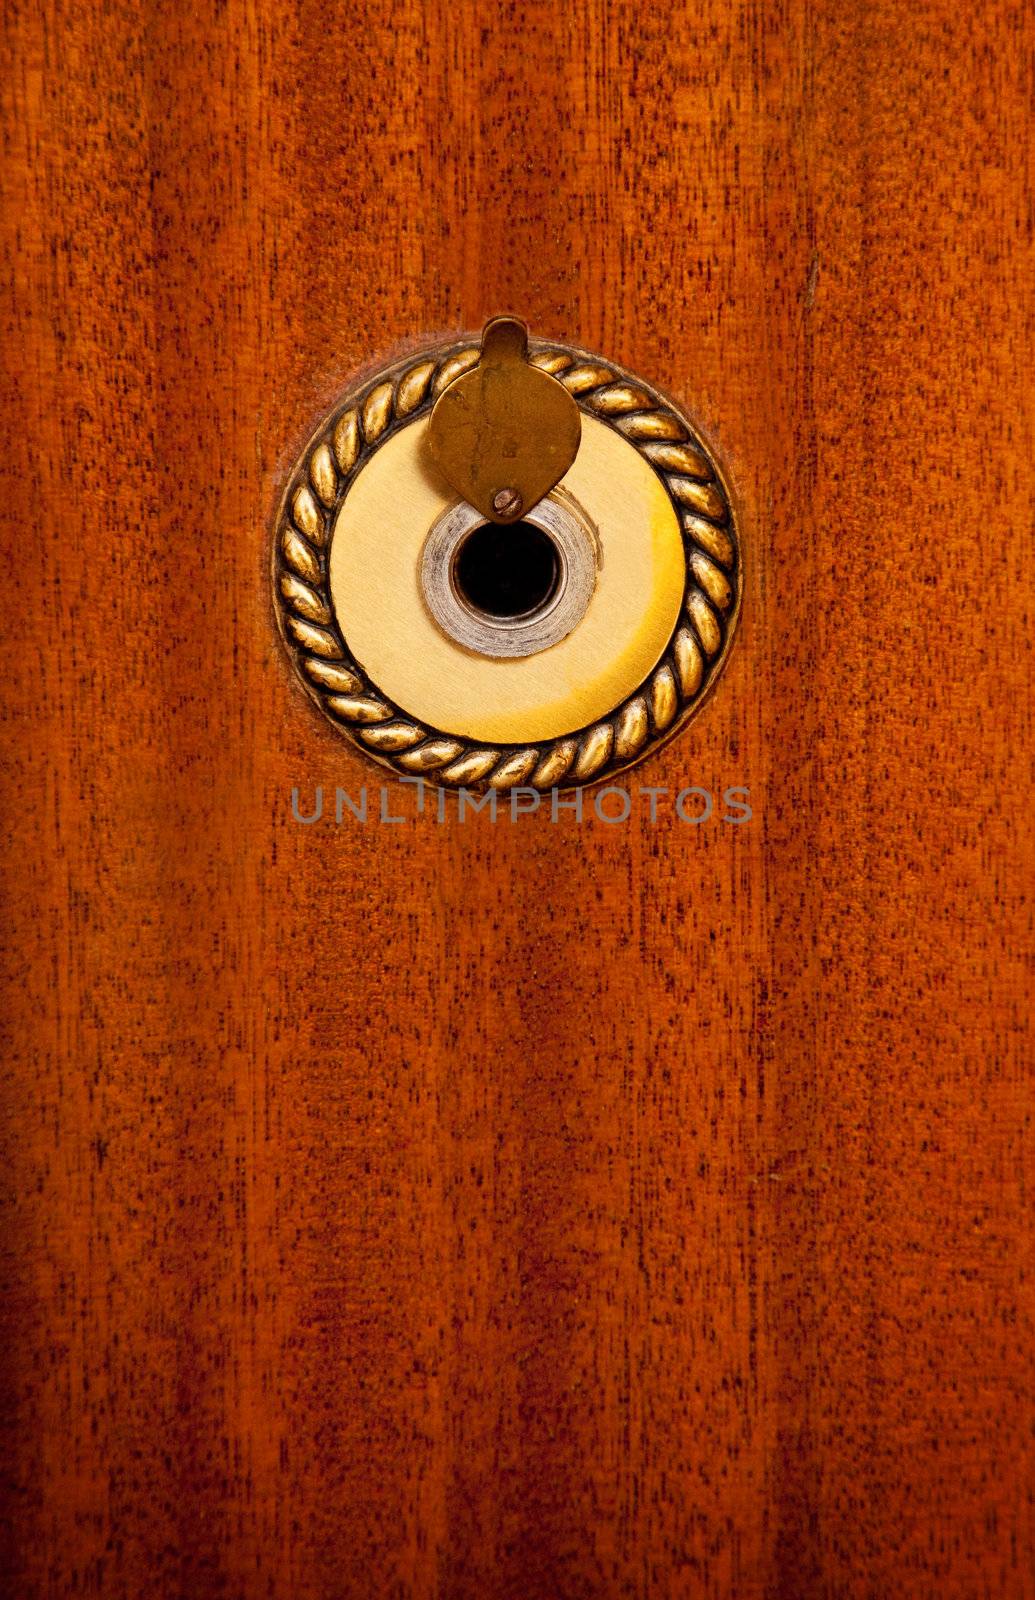 frontal image of peephole